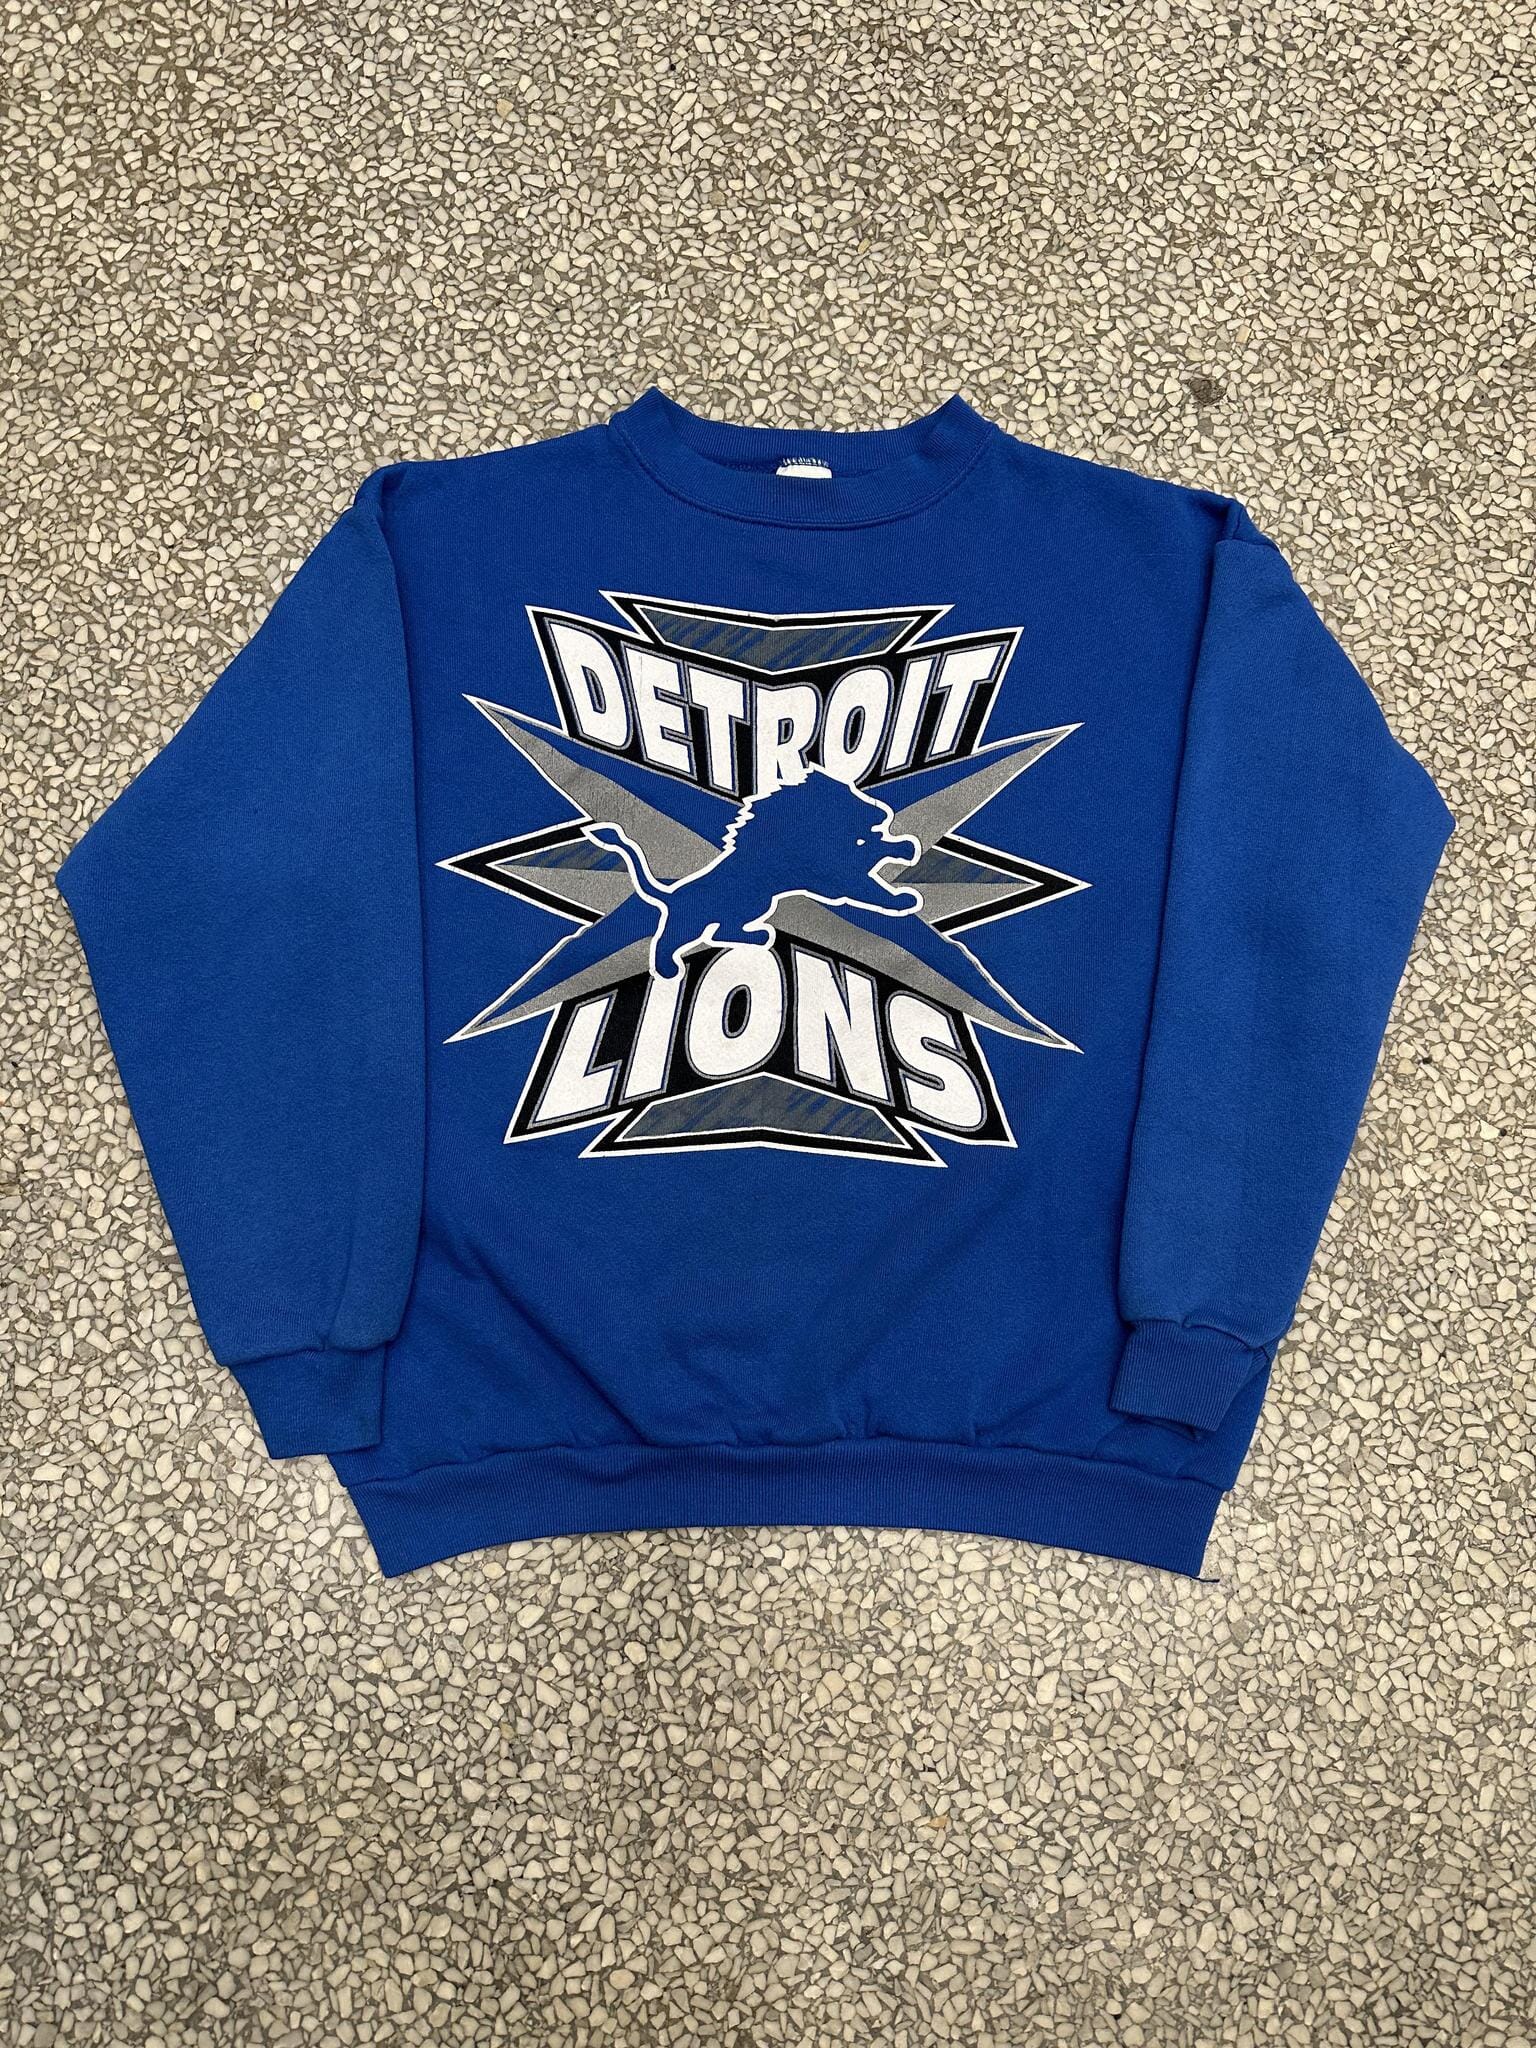 Vintage 1990s Detroit Lions T-shirt Size XL 